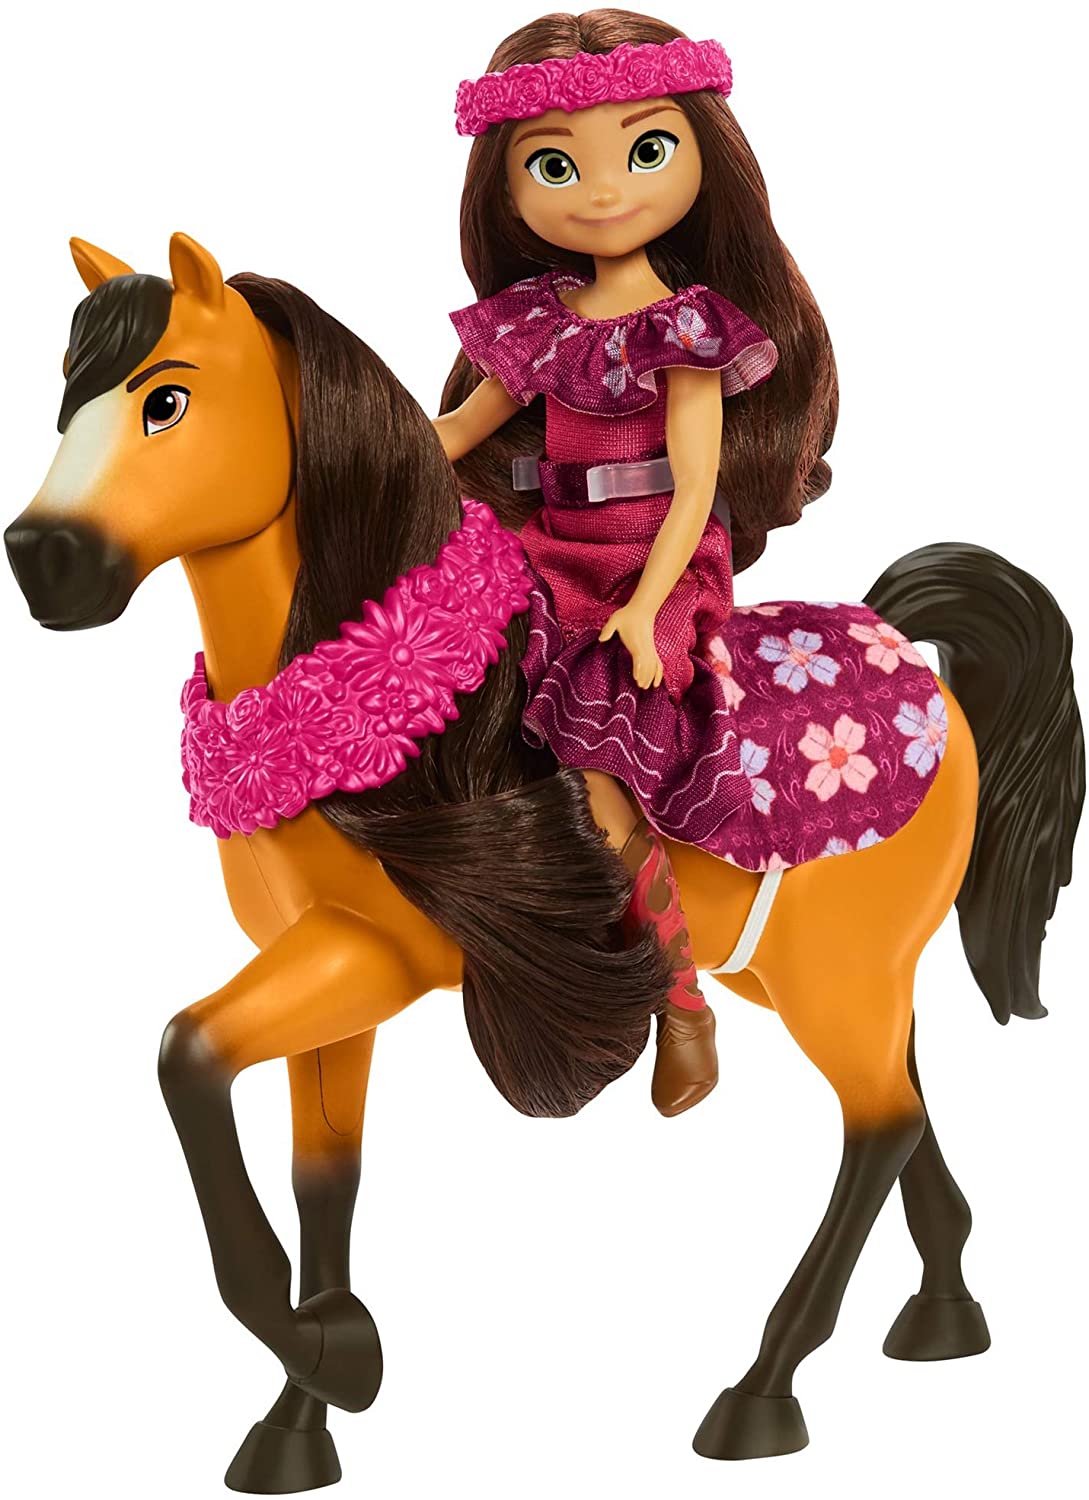 Mattel Spirit Untamed dolls 2021 - 2022 - YouLoveIt.com